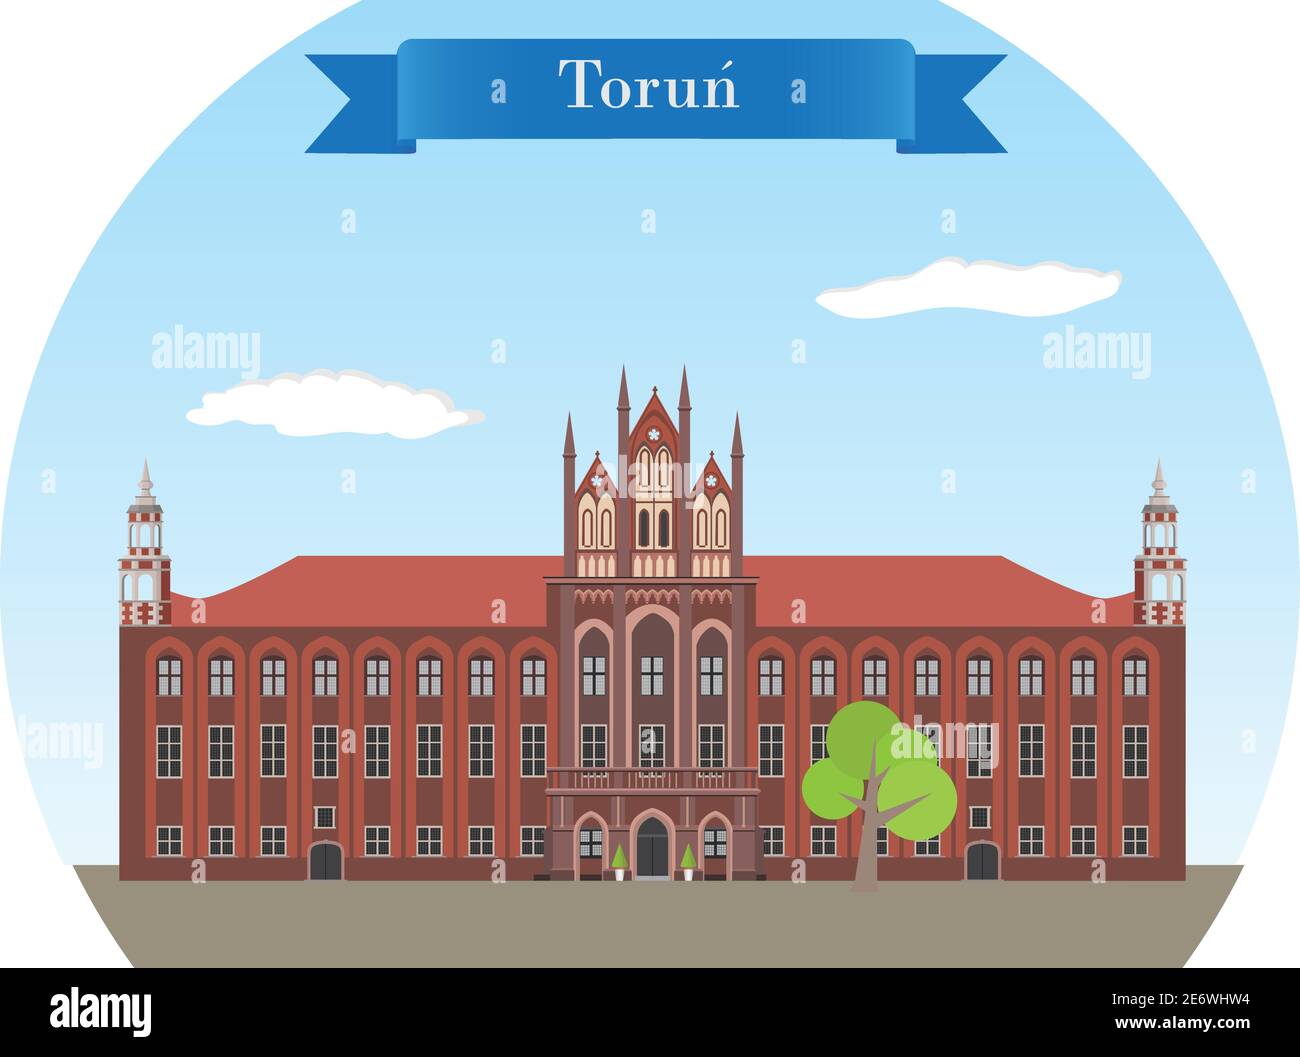 Torun, Polen. Historisches gotisches Rathaus - detaillierte Vektorgrafik Stock Vektor